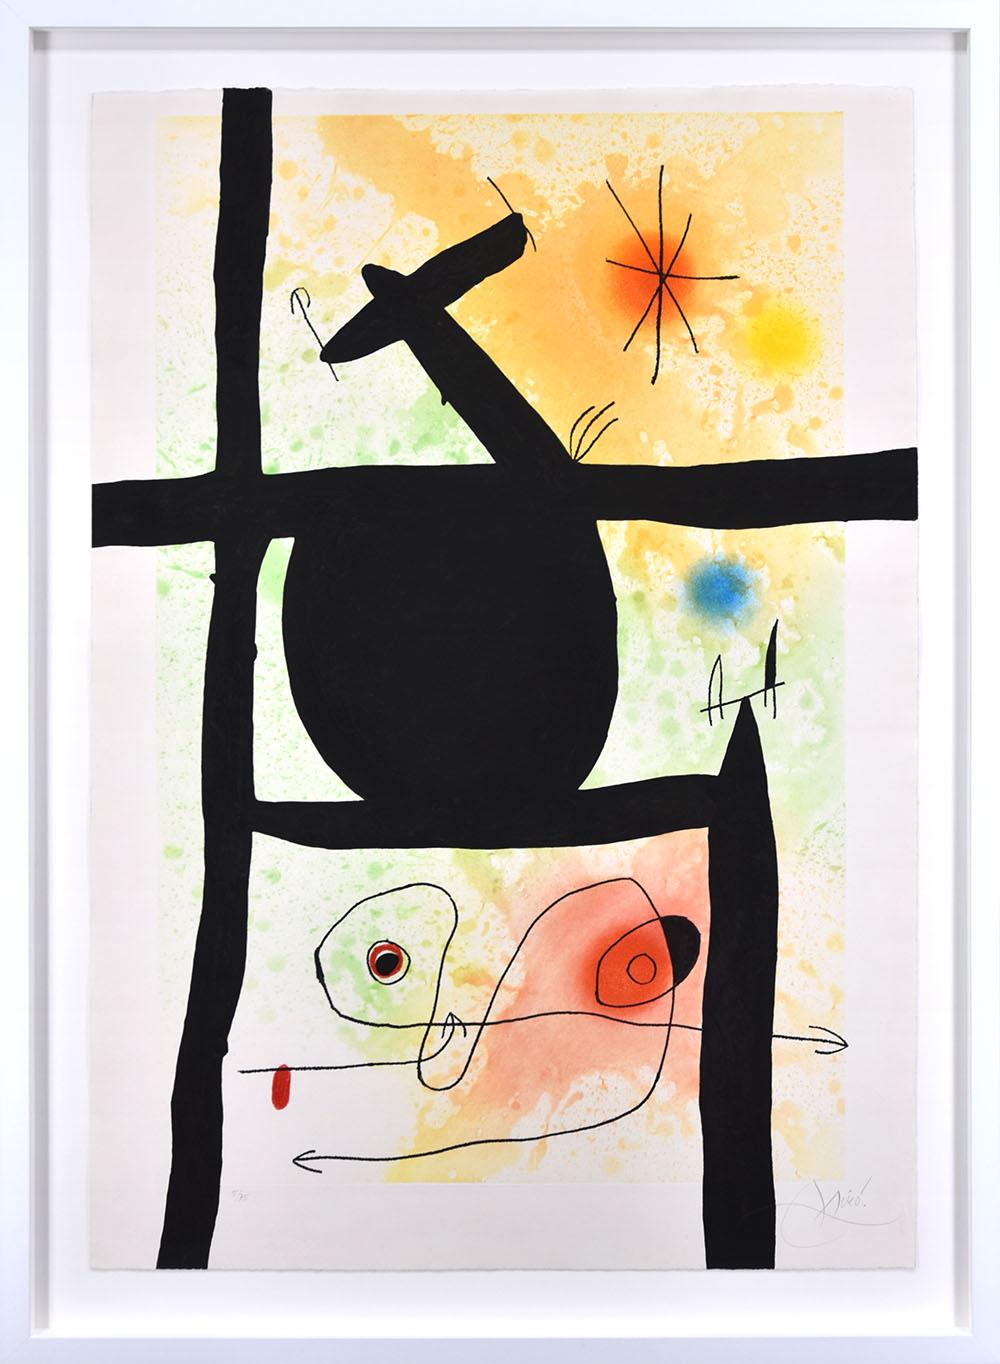 La Calebasse (The Gourd), 1969 - Print by Joan Miró